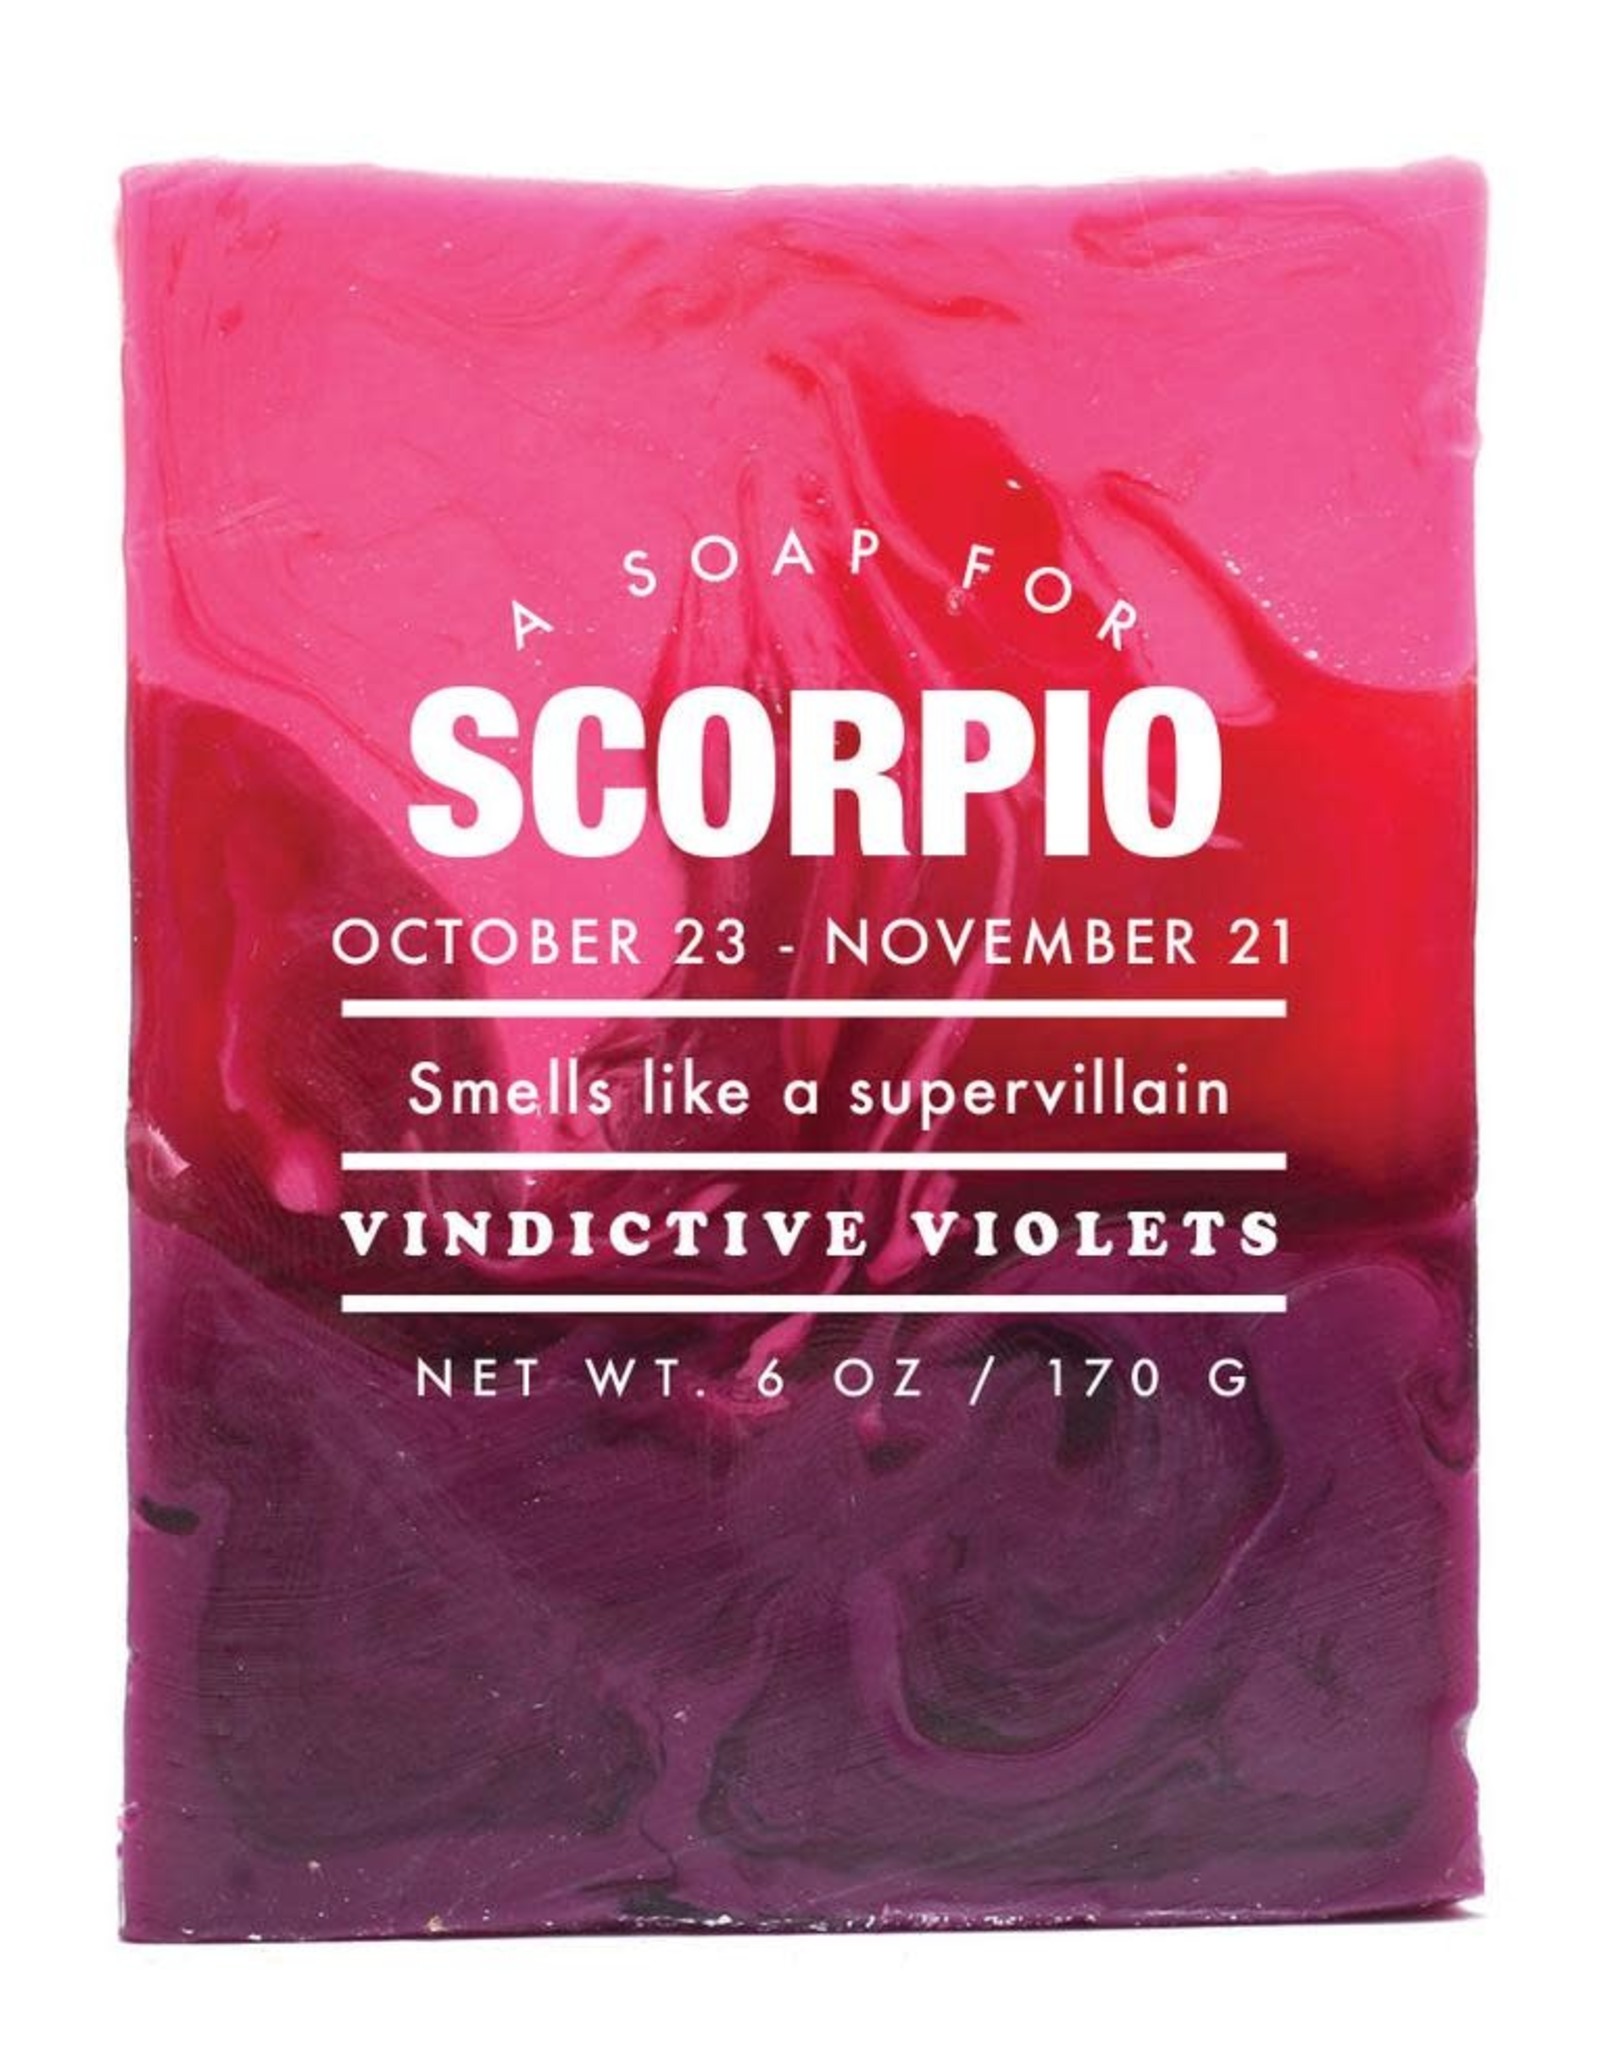 WER - Soap / Scorpio 6 oz